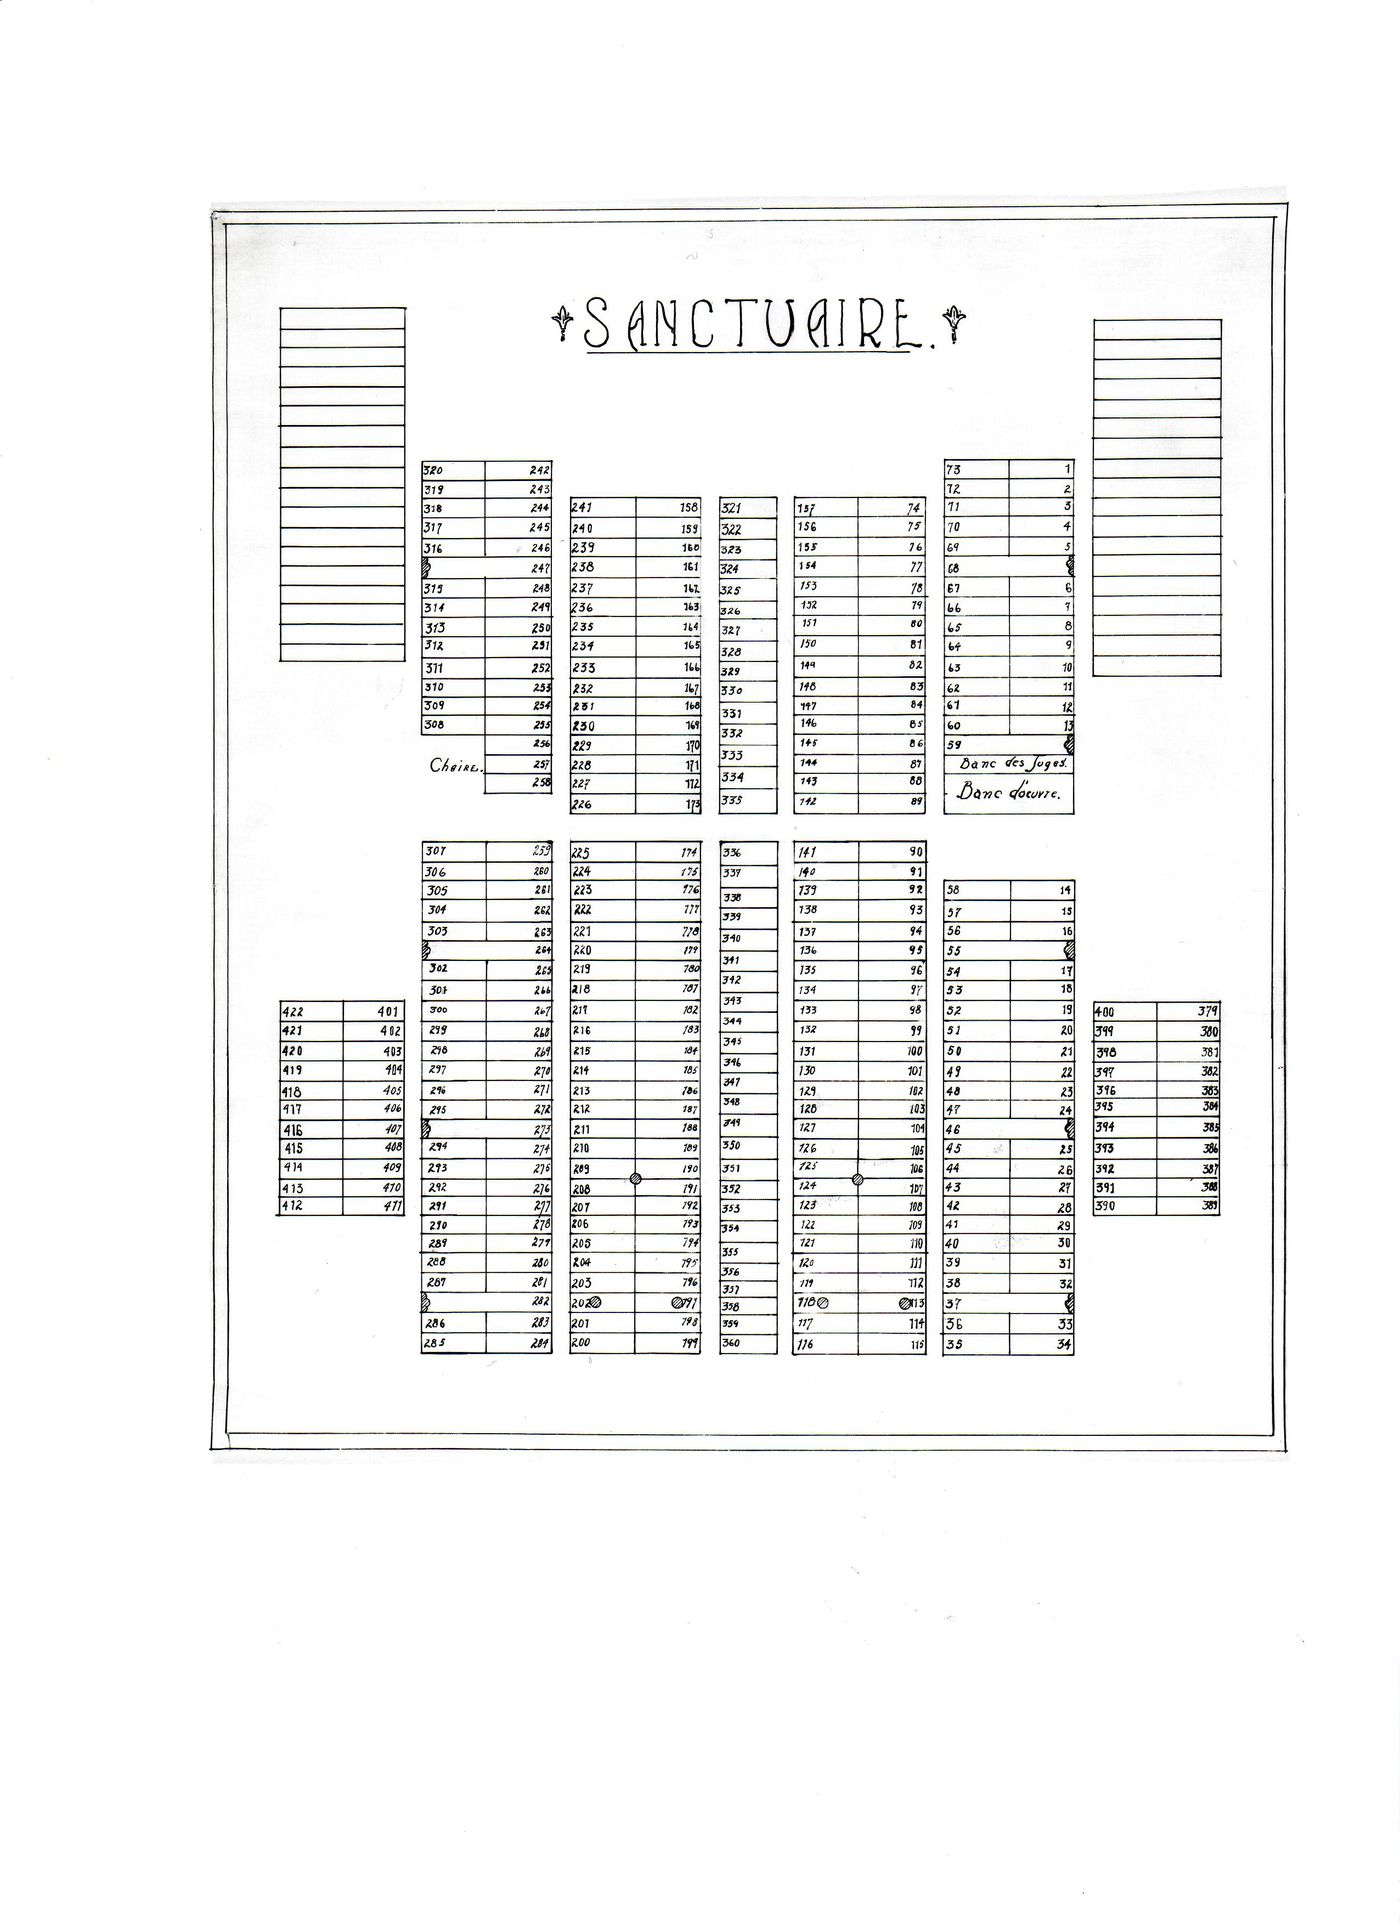 Seating plan for the sanctuary for Notre-Dame de Montréal [?]